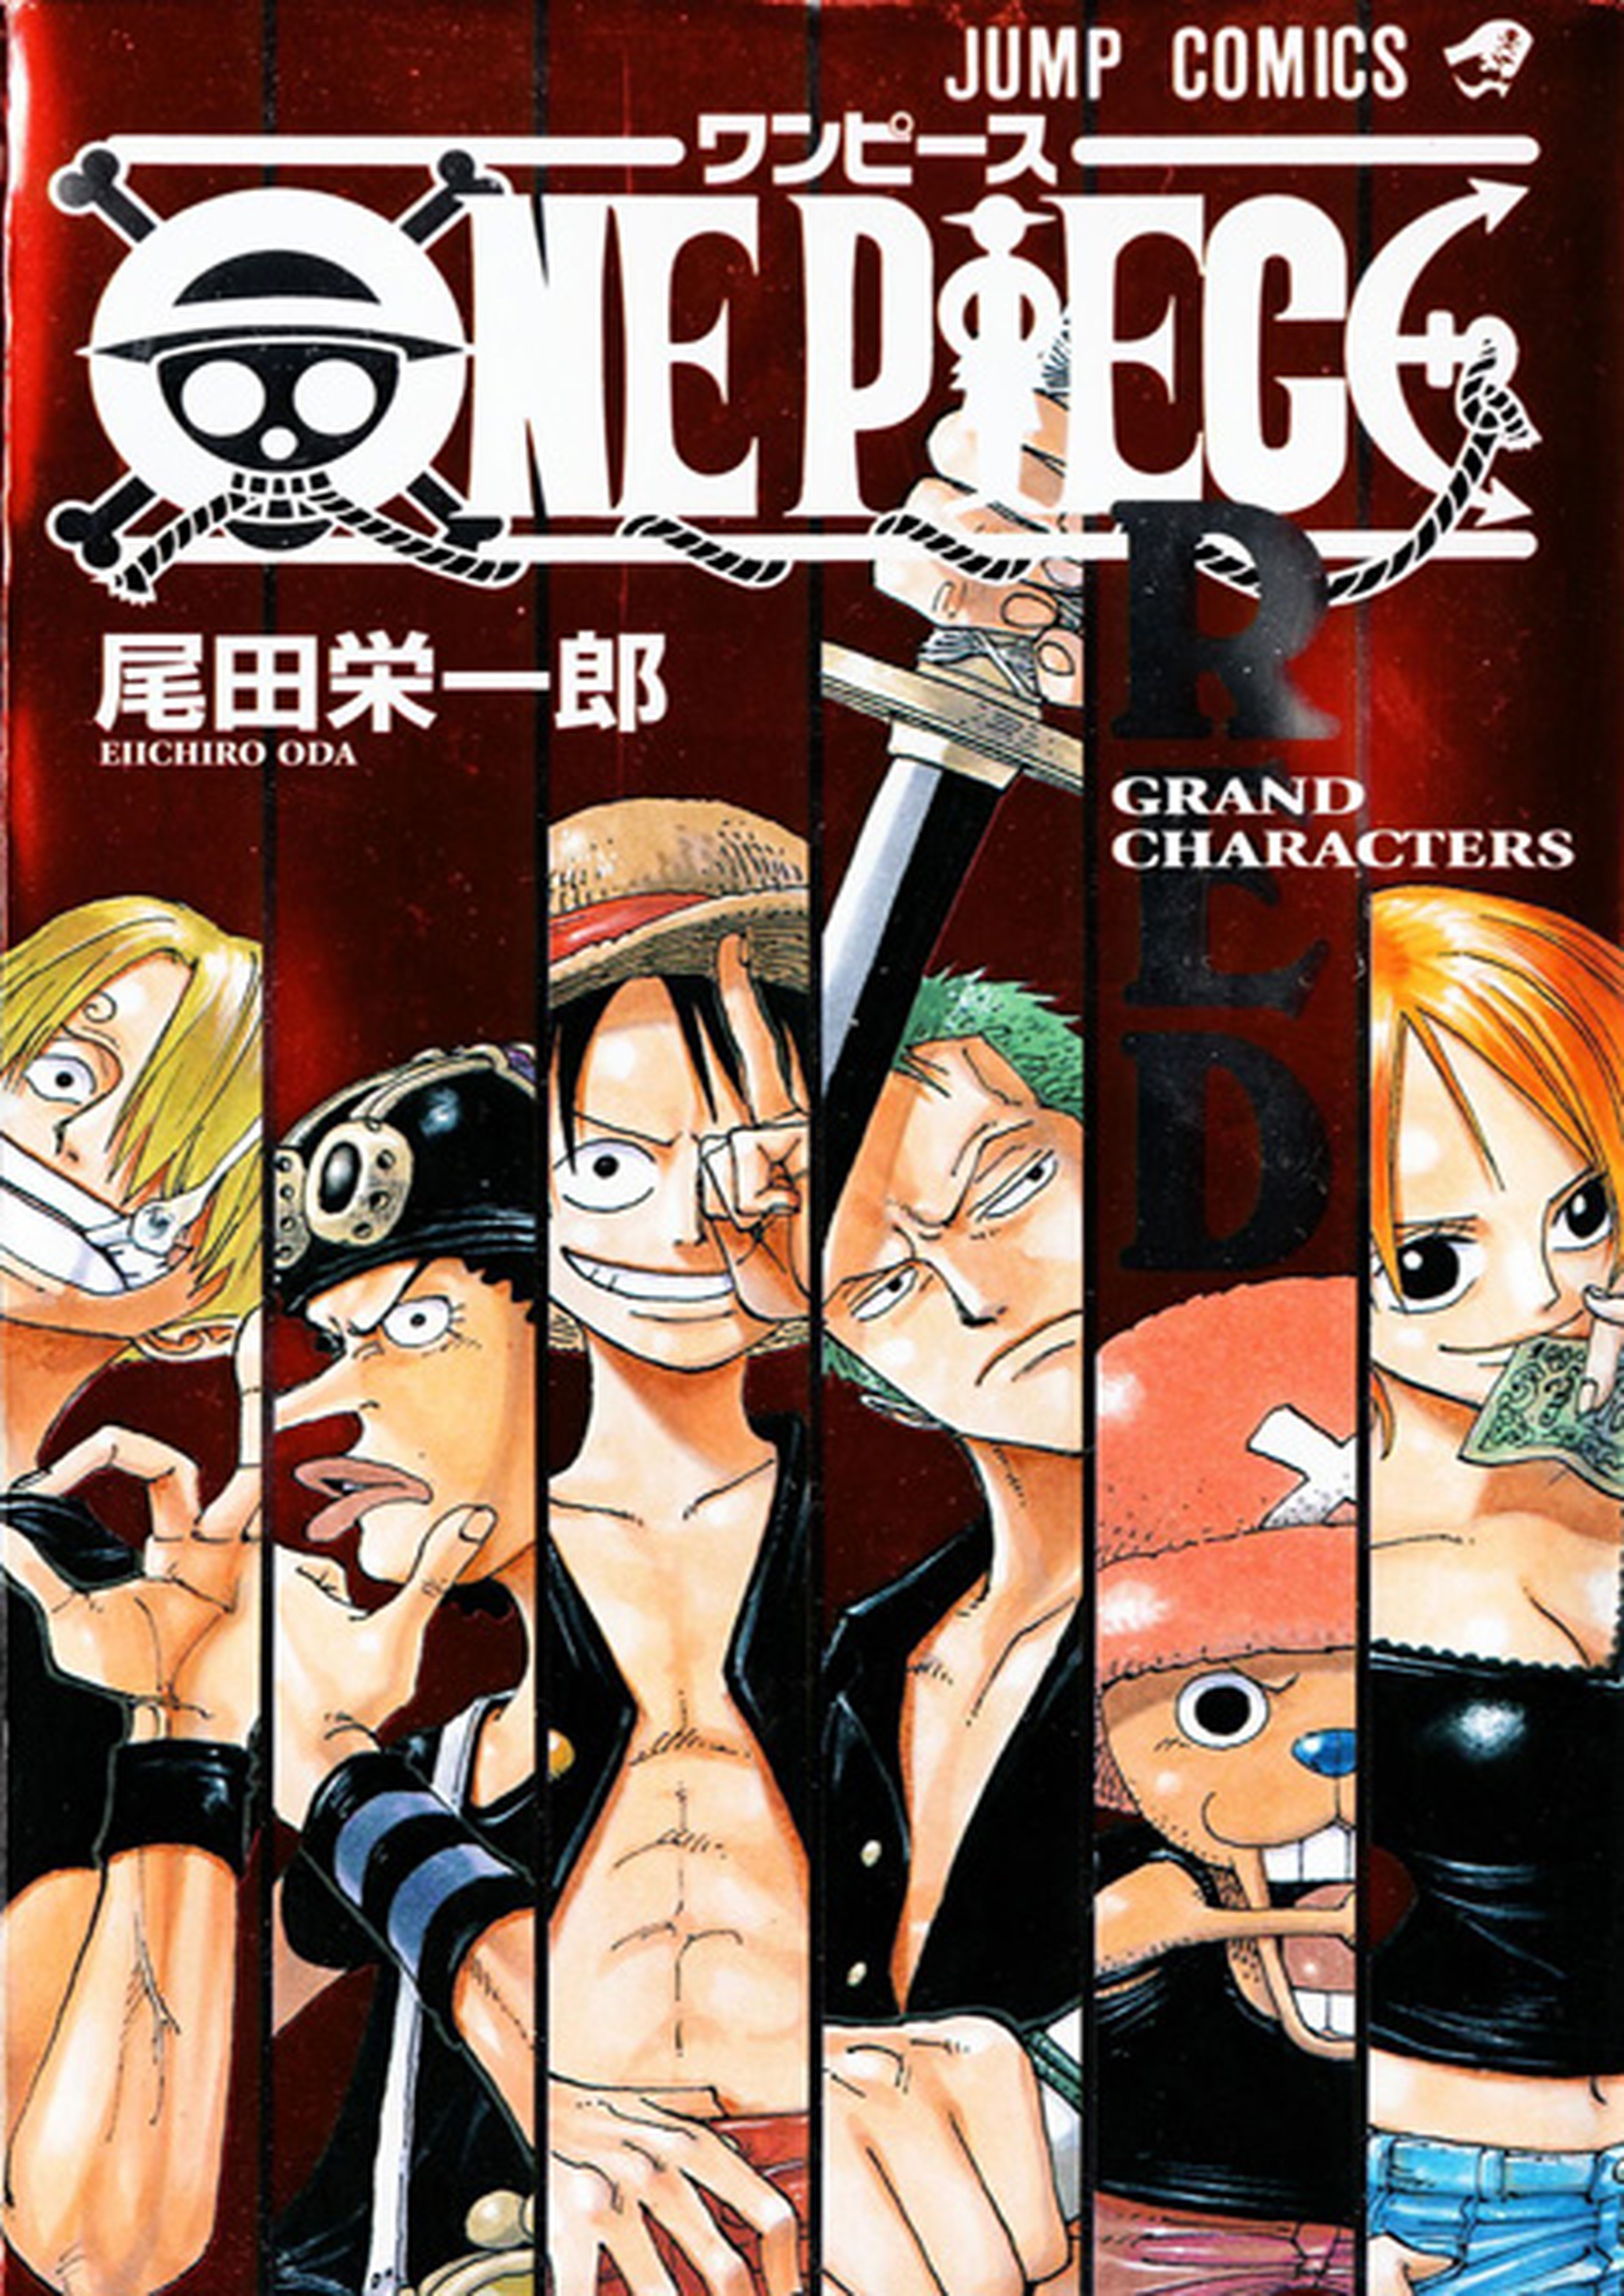 One Piece Red, en febrero